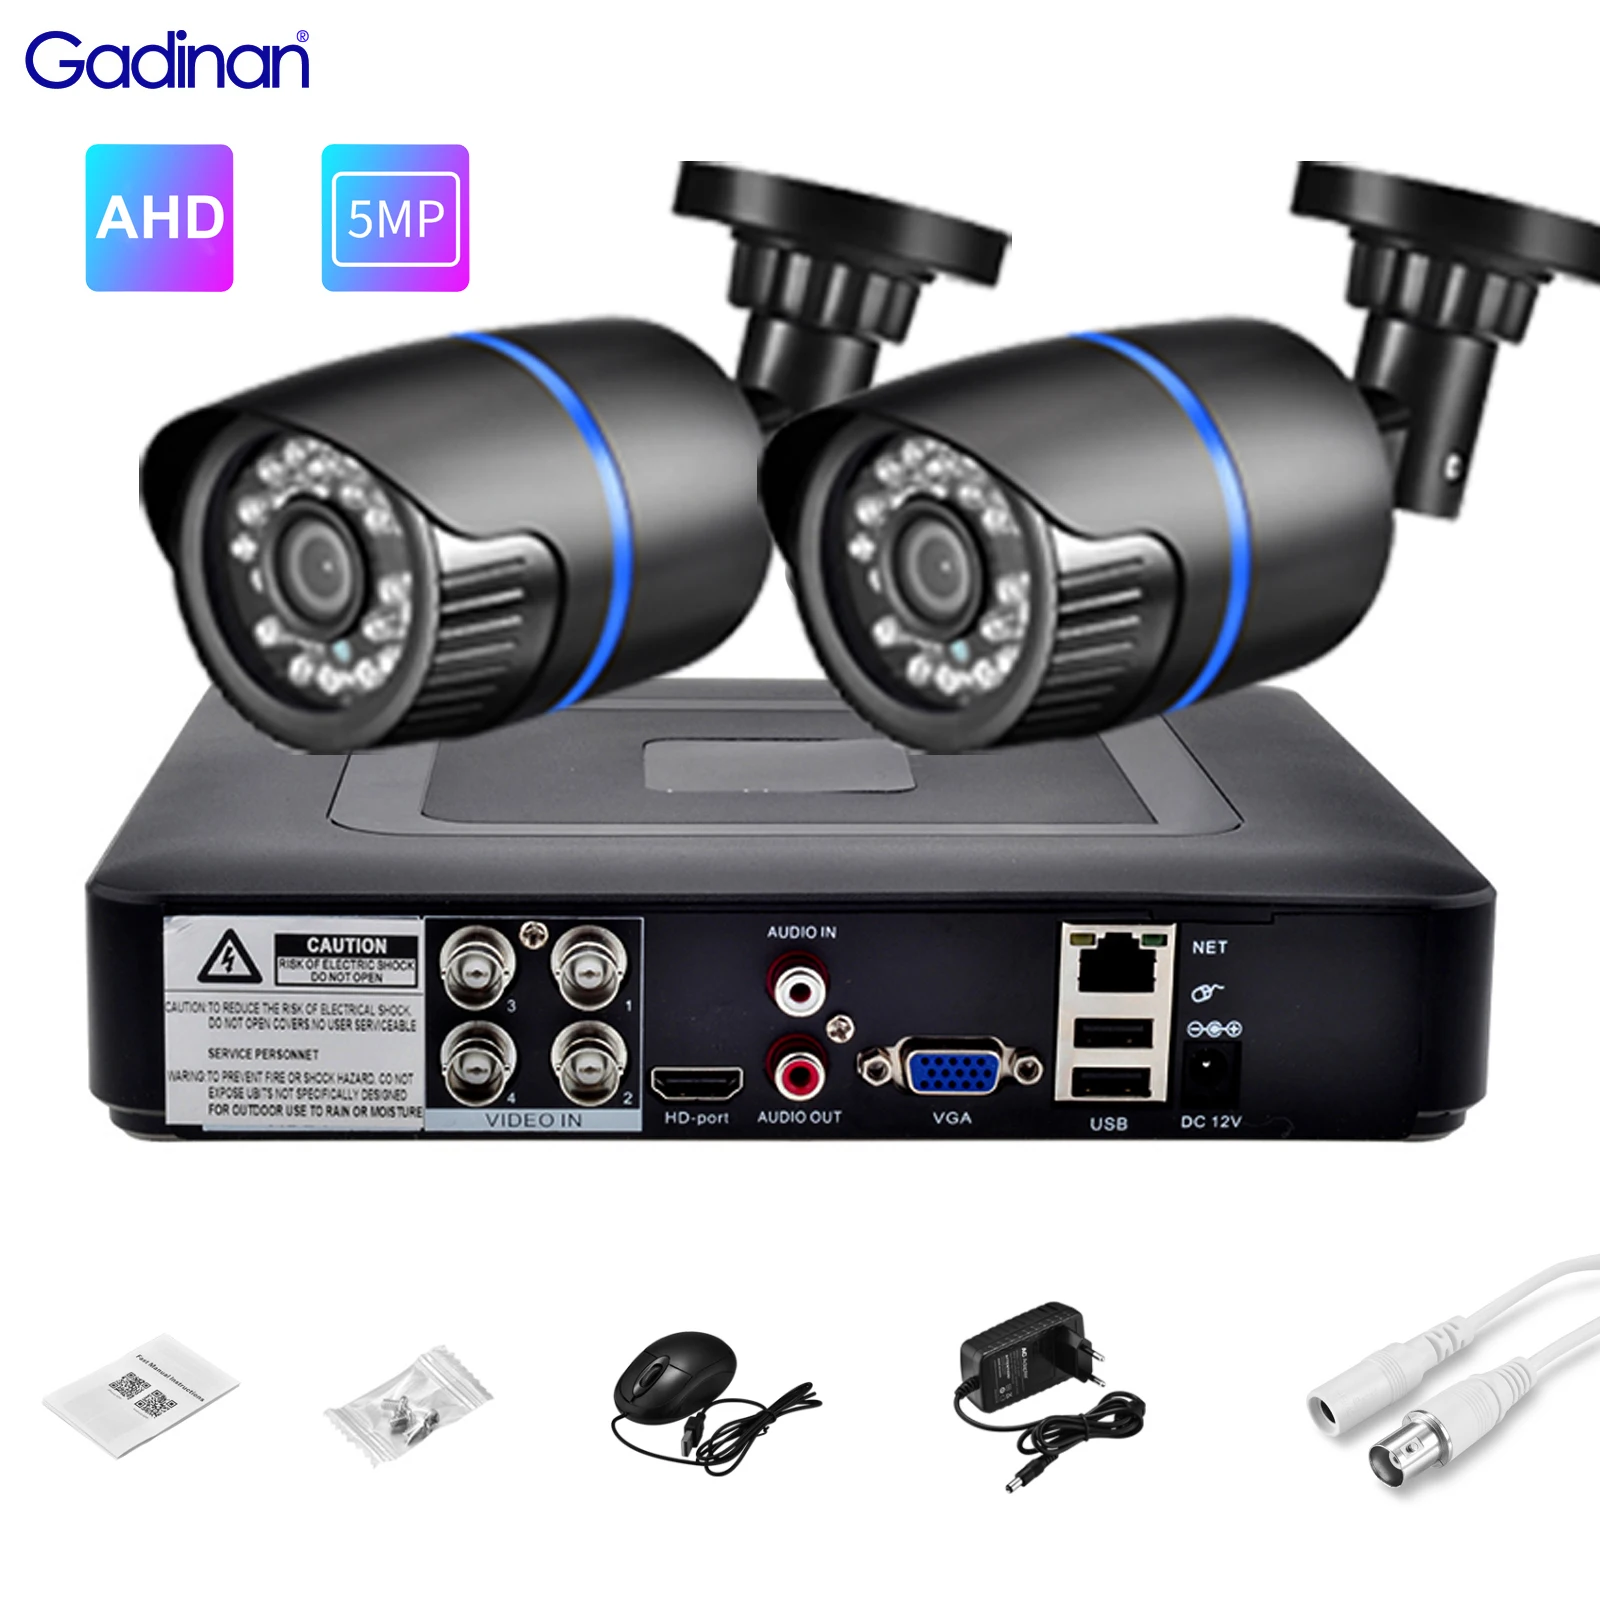 

Gadinan 4CH DVR CCTV System 2PCS AHD Cameras 5MP 2MP 720P Video Surveillance Kit 5 in 1 DVR Recorder Night Vision Bullet AHD Cam